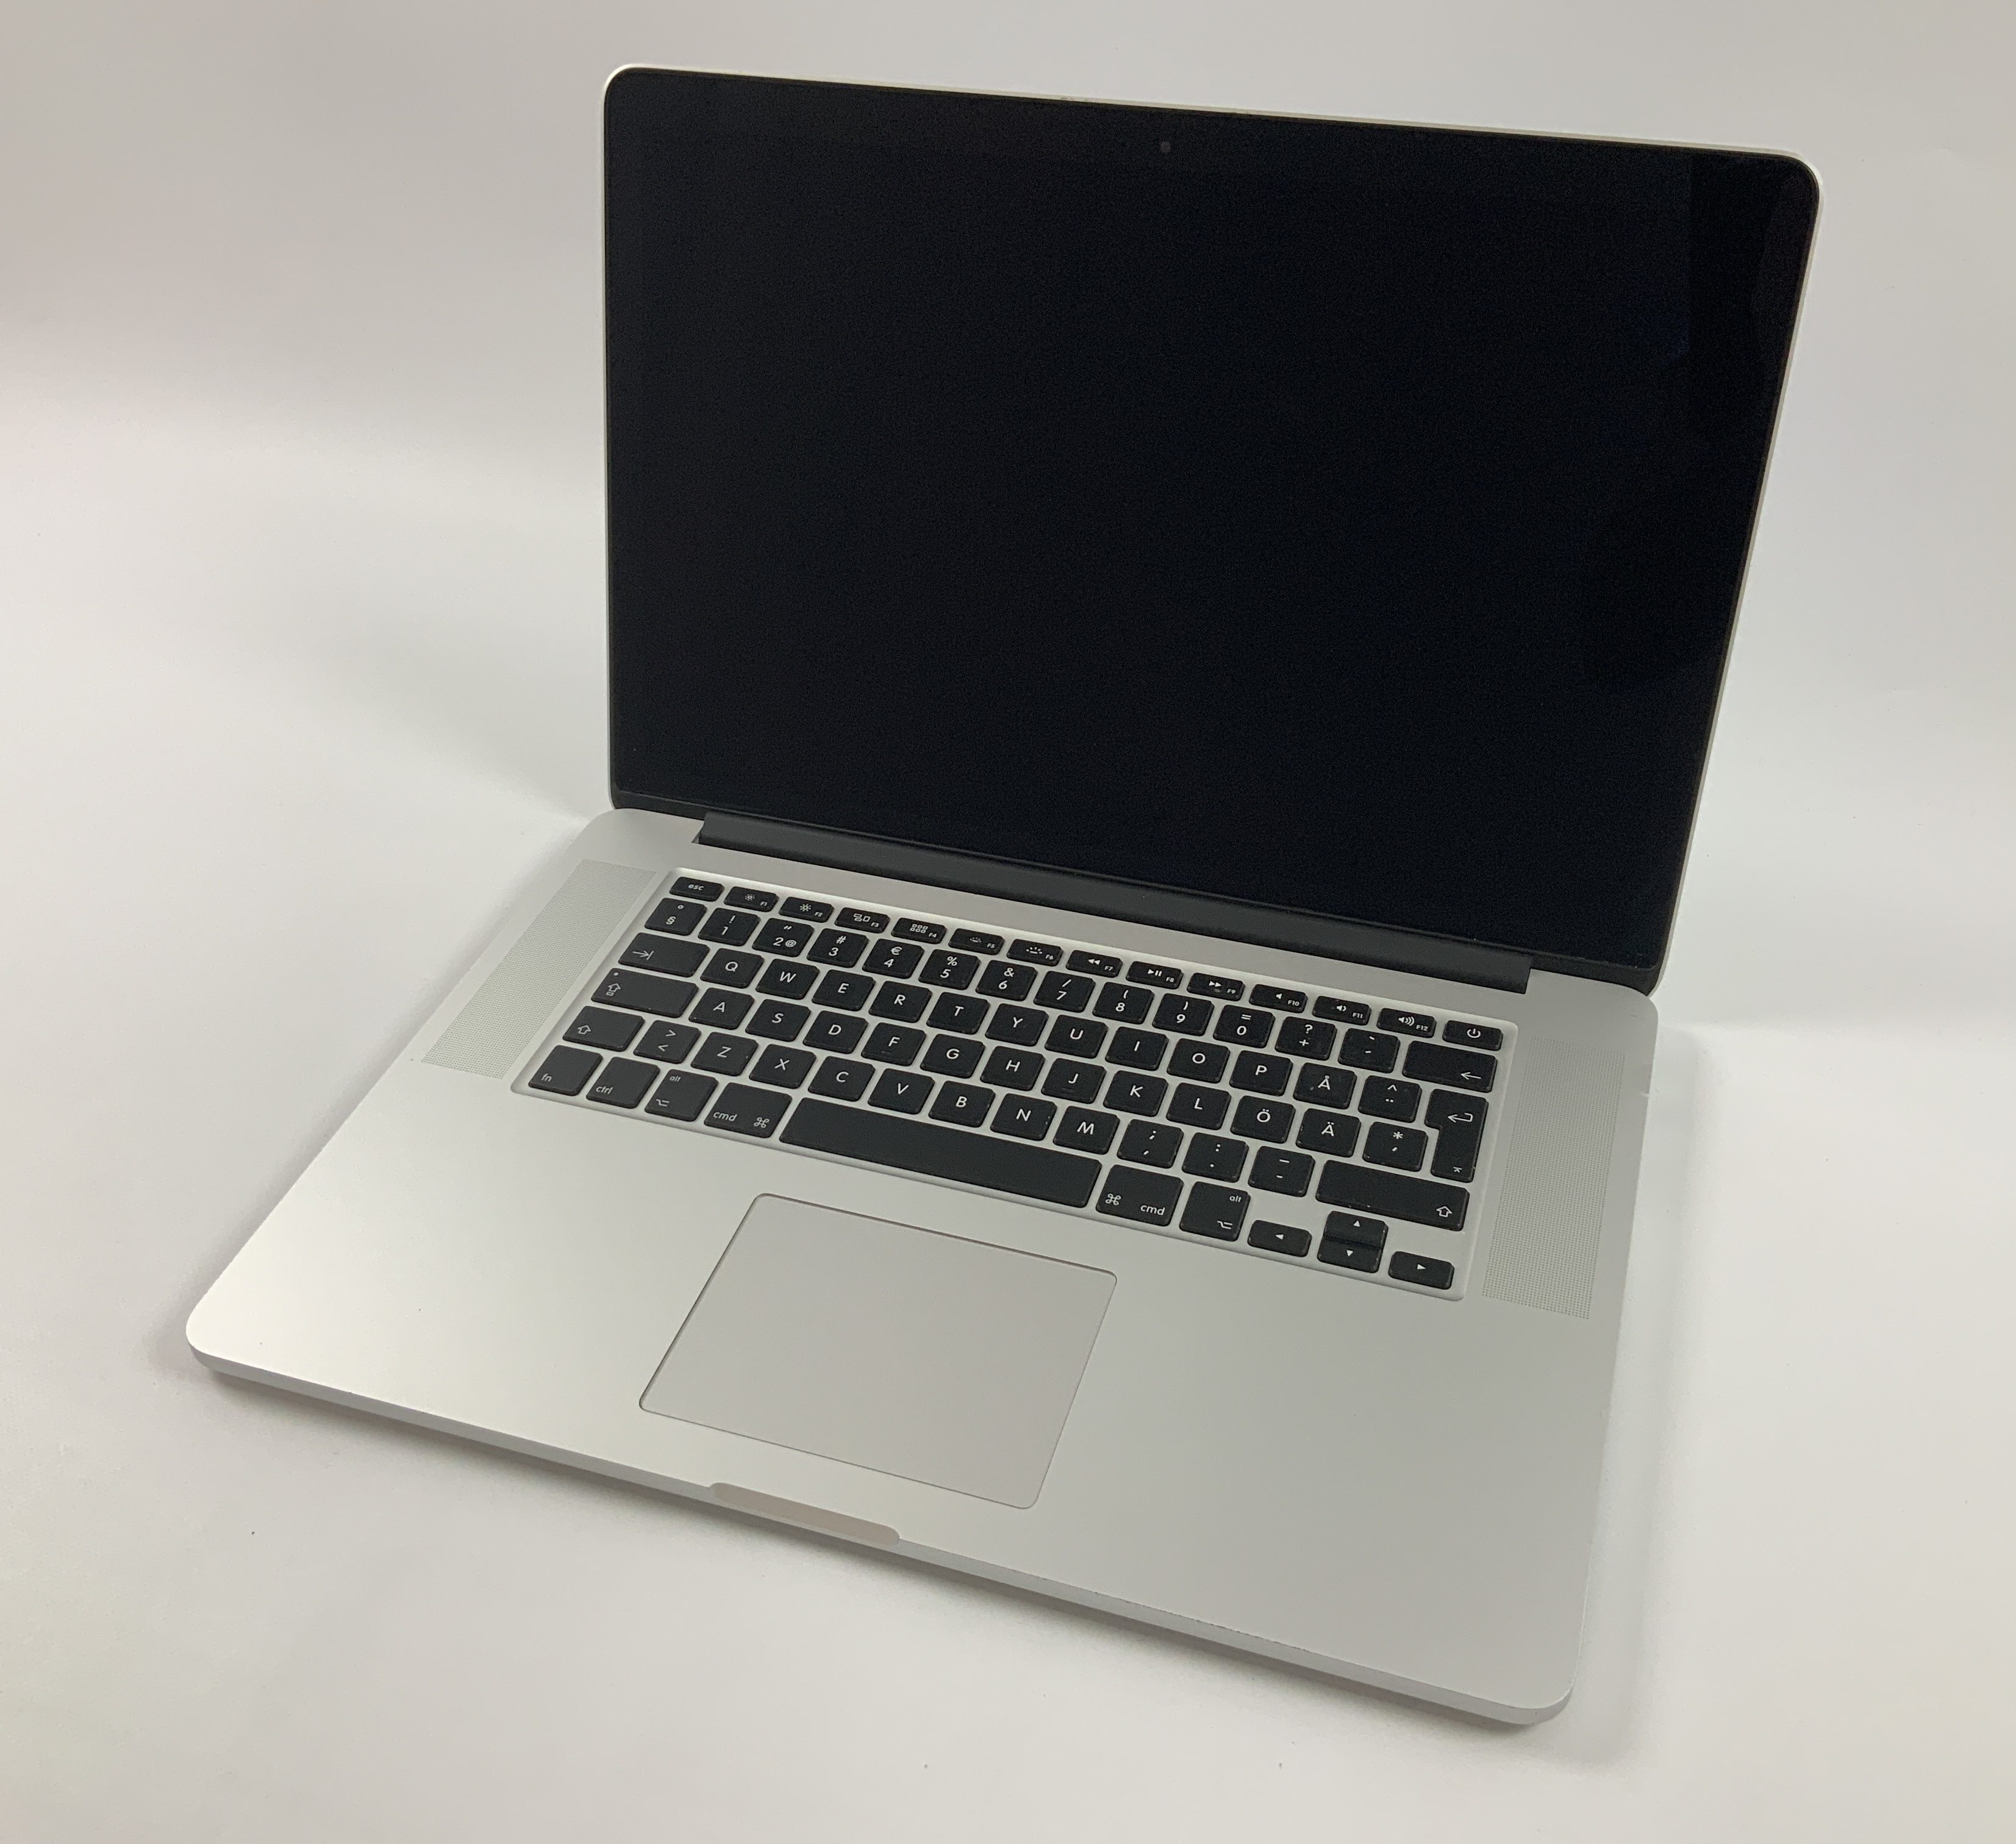 MacBook Pro Retina 15" Mid 2015 (Intel Quad-Core i7 2.2 GHz 16 GB RAM 256 GB SSD), Intel Quad-Core i7 2.2 GHz, 16 GB RAM, 256 GB SSD, Bild 1